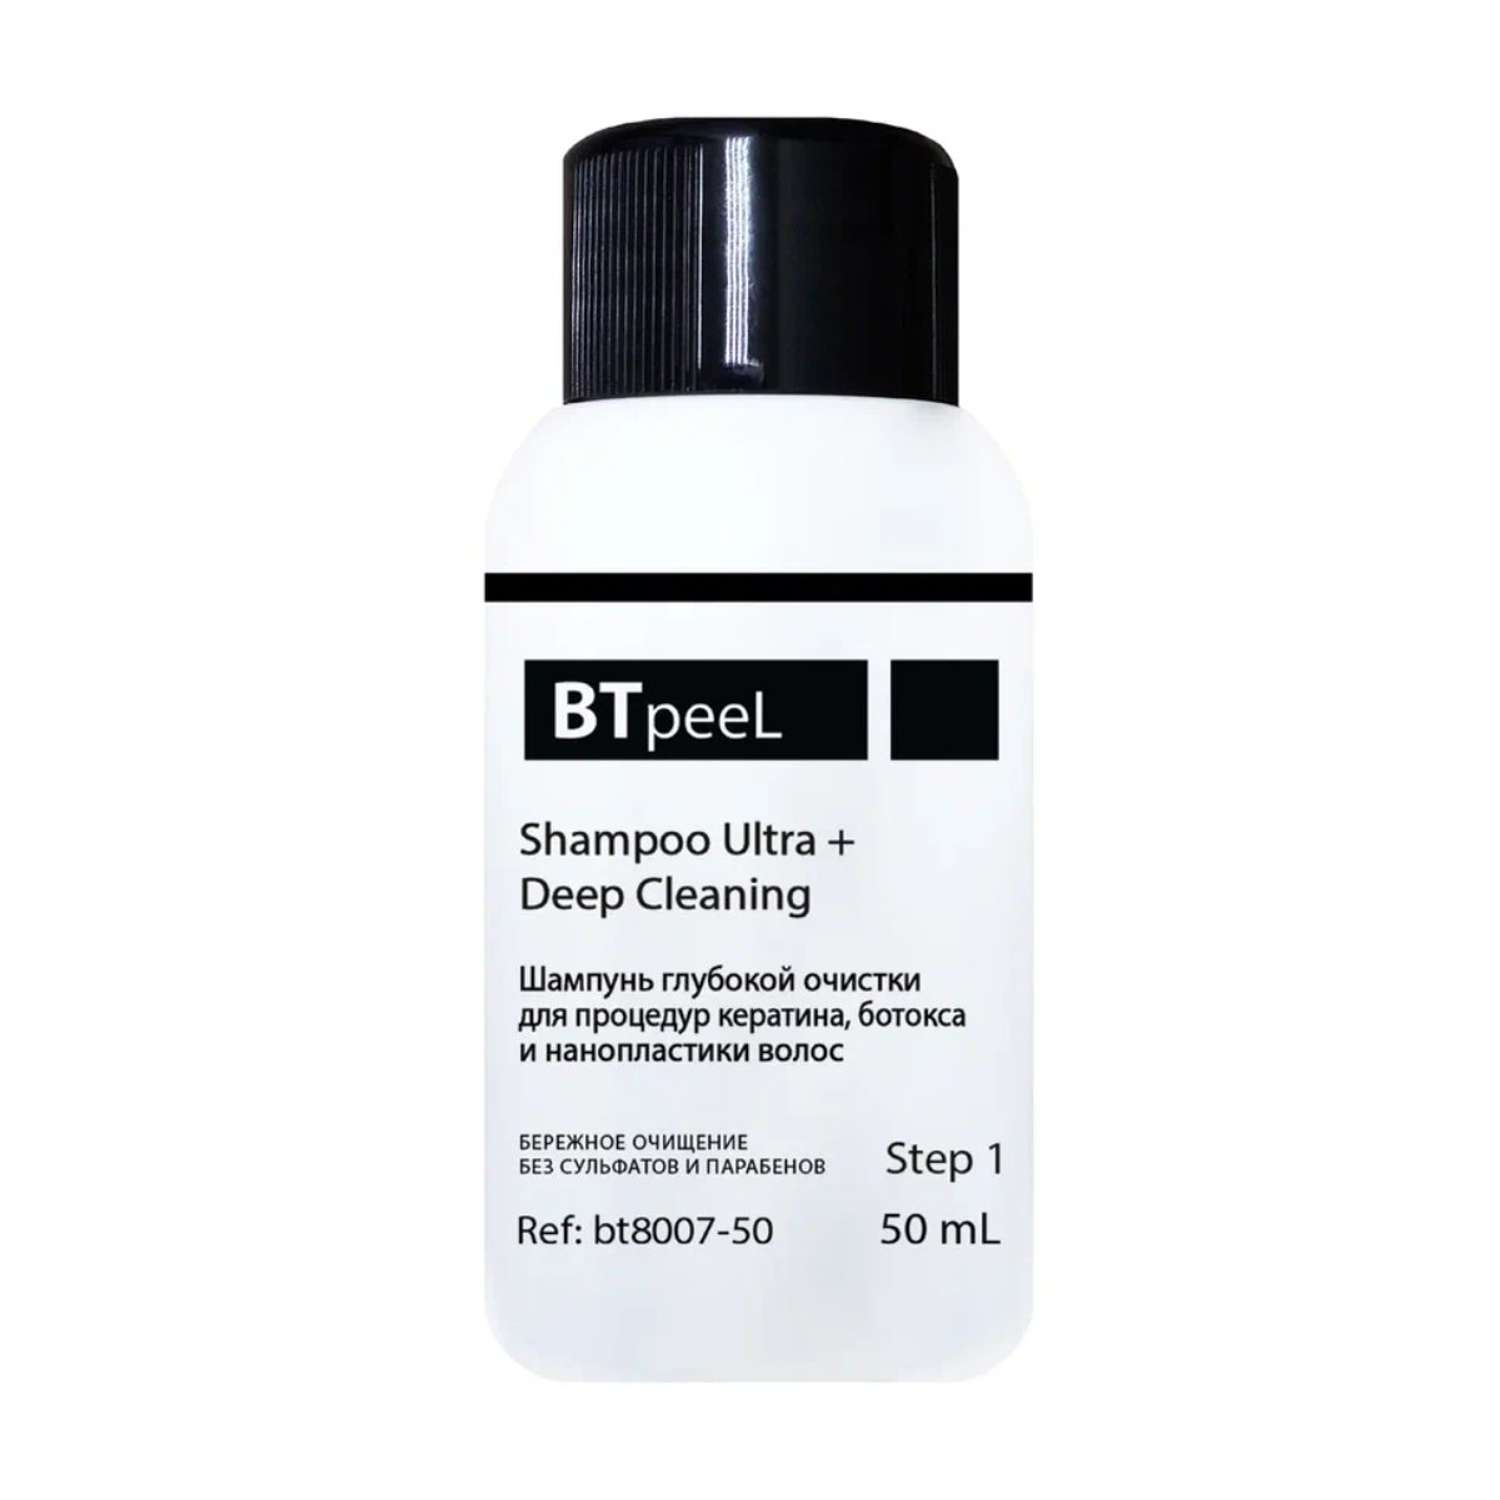 Шампунь BTpeeL глубокой очистки c защитой волос для процедур кератина и ботокса - фото 1